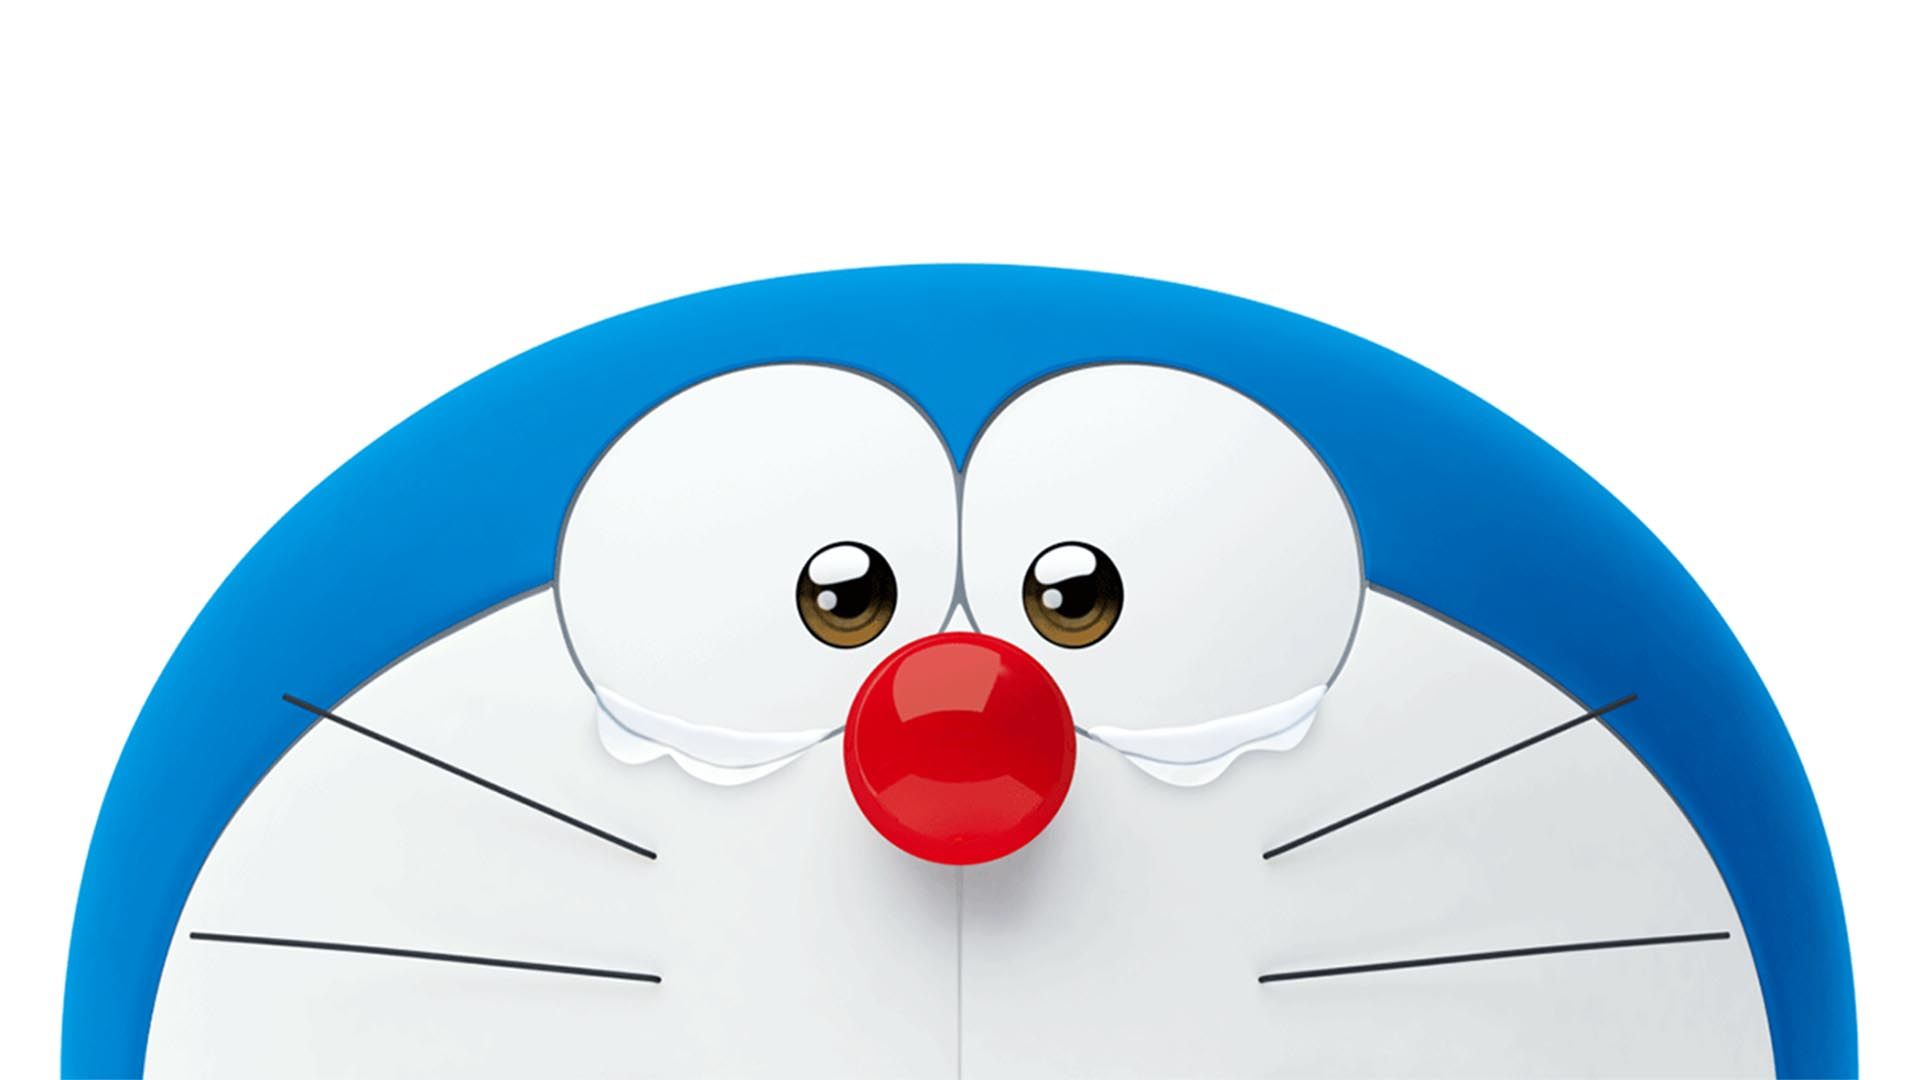 Dành riêng cho người dùng PC, hình nền Doraemon không chỉ mang lại vẻ đẹp tuyệt vời mà còn thể hiện sự yêu thích của bạn đối với chú mèo máy từ tương lai. Bạn sẽ cảm thấy khiến lòng người và tràn đầy niềm vui khi sử dụng chúng.